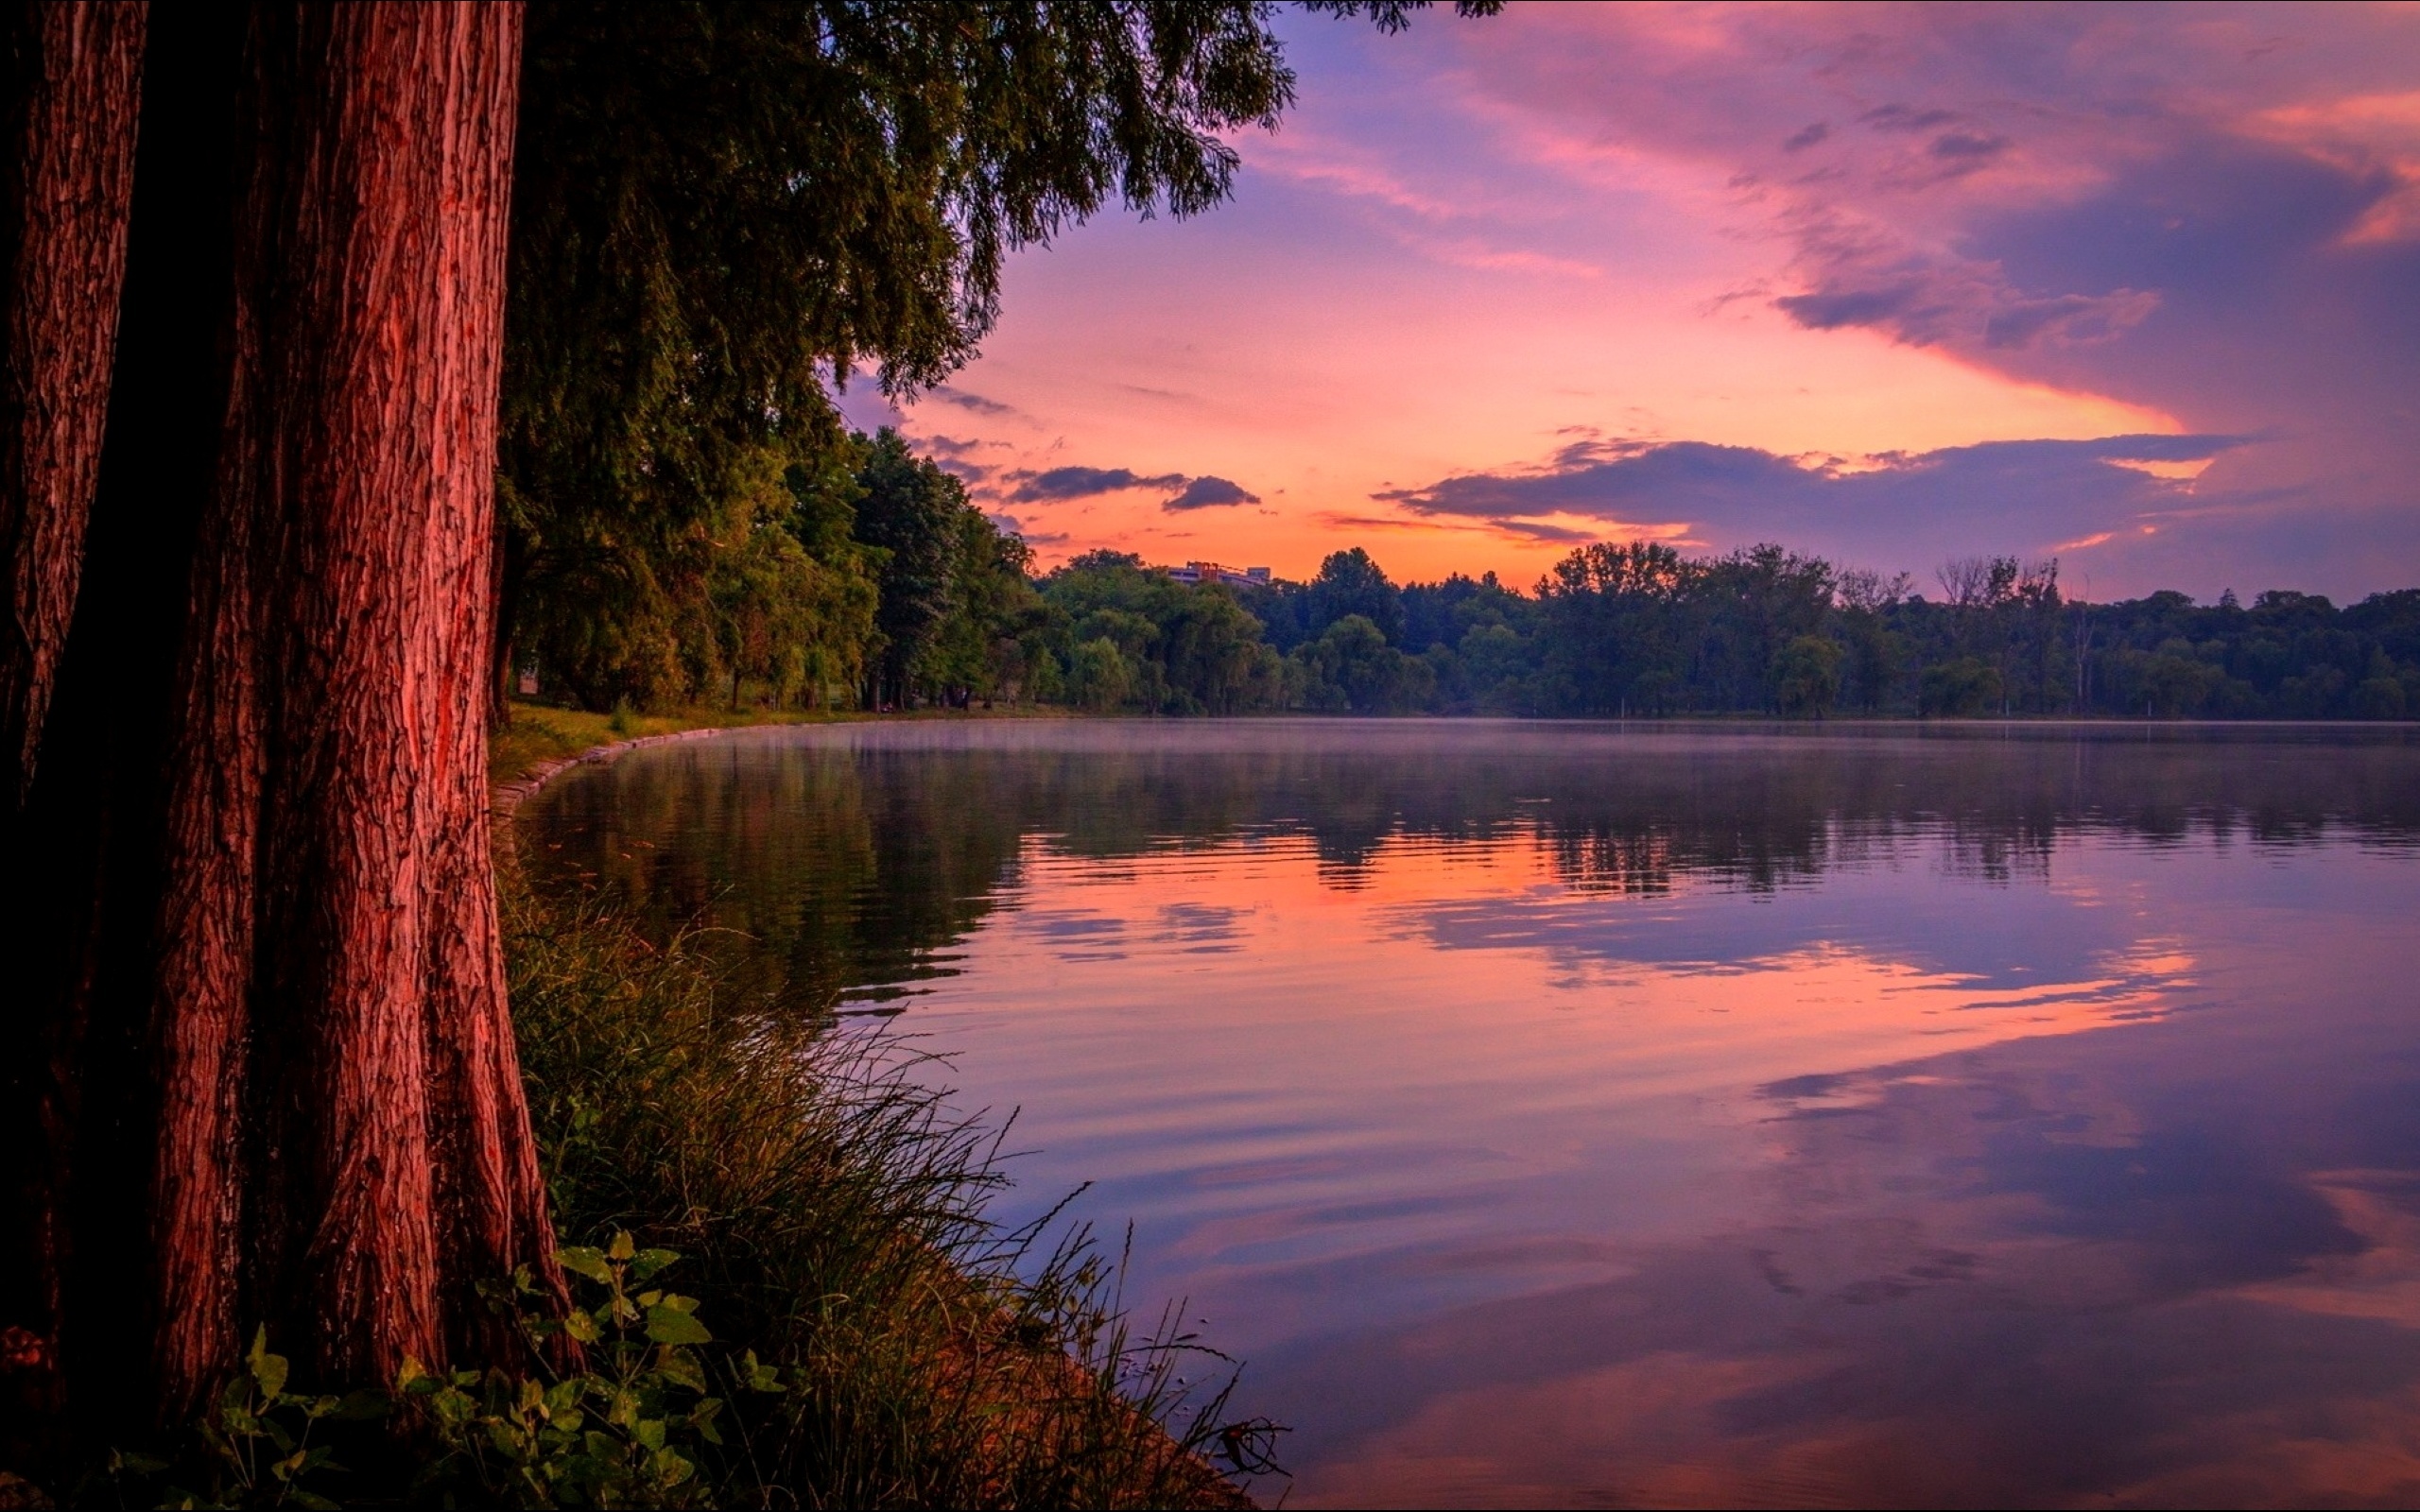 Картинки на обои. Природа вечер. Пейзаж вечер. Озеро в лесу. Закат на озере.